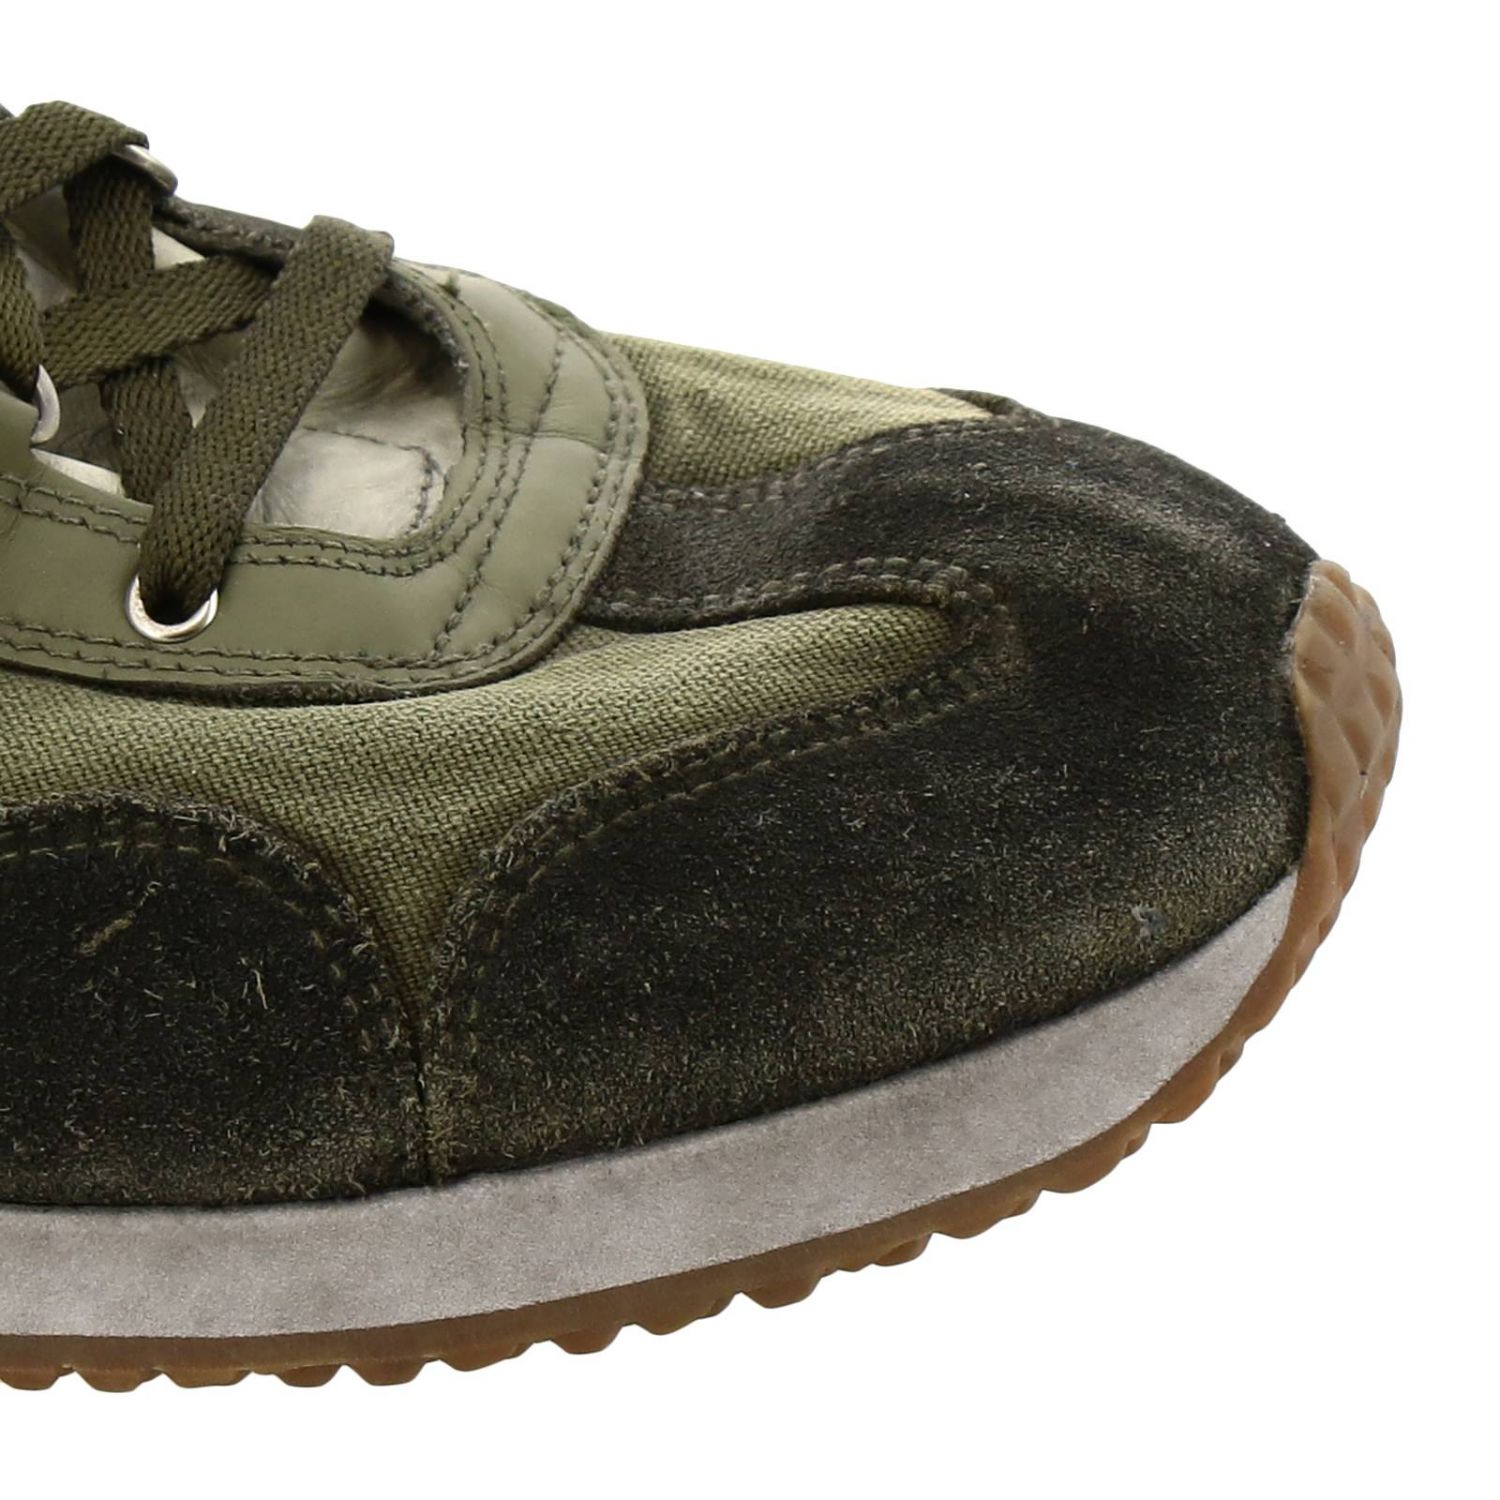 Diadora Outlet: Sneakers men - Olive | Sneakers Diadora 174736 GIGLIO.COM